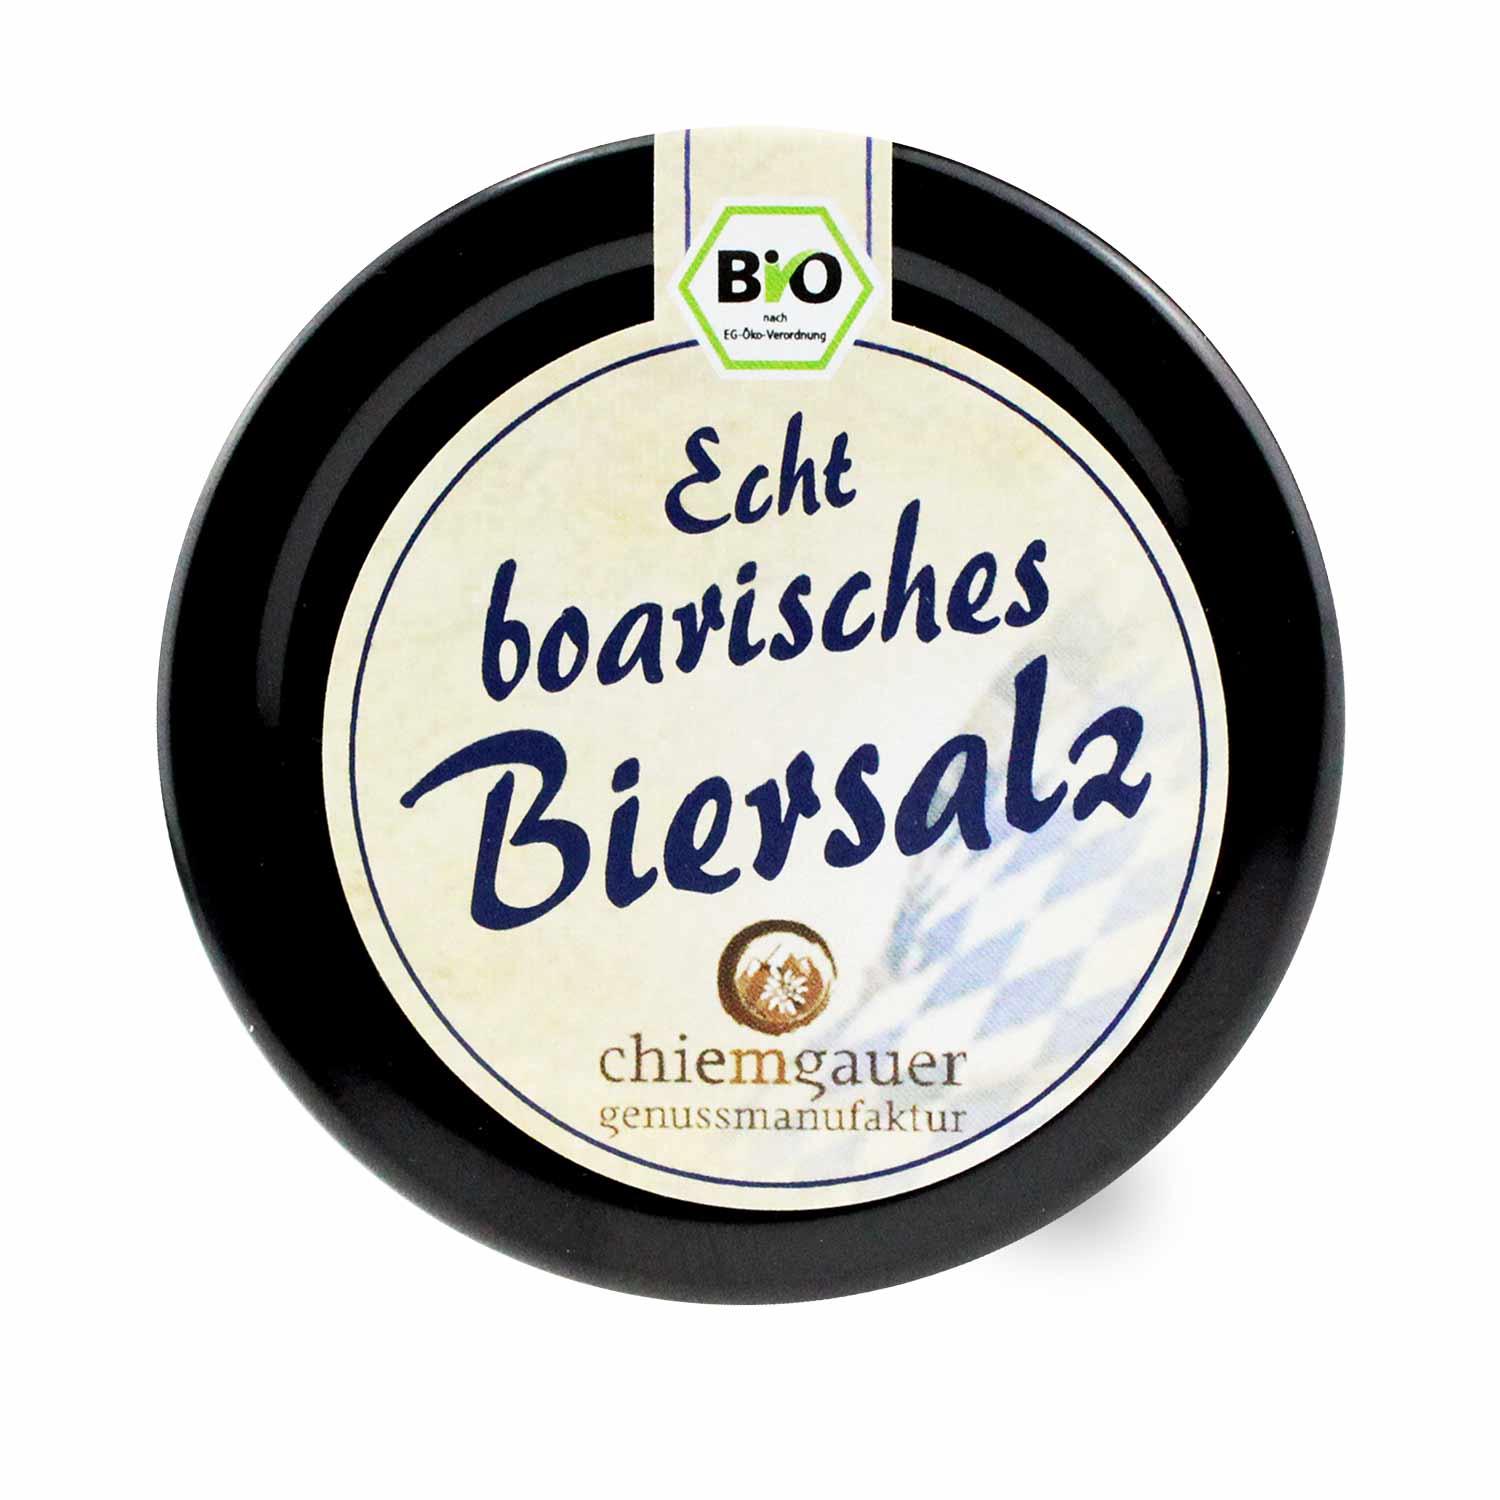 Bio-Salz "Boarisches Biersalz" - bavariashop - mei LebensGfui